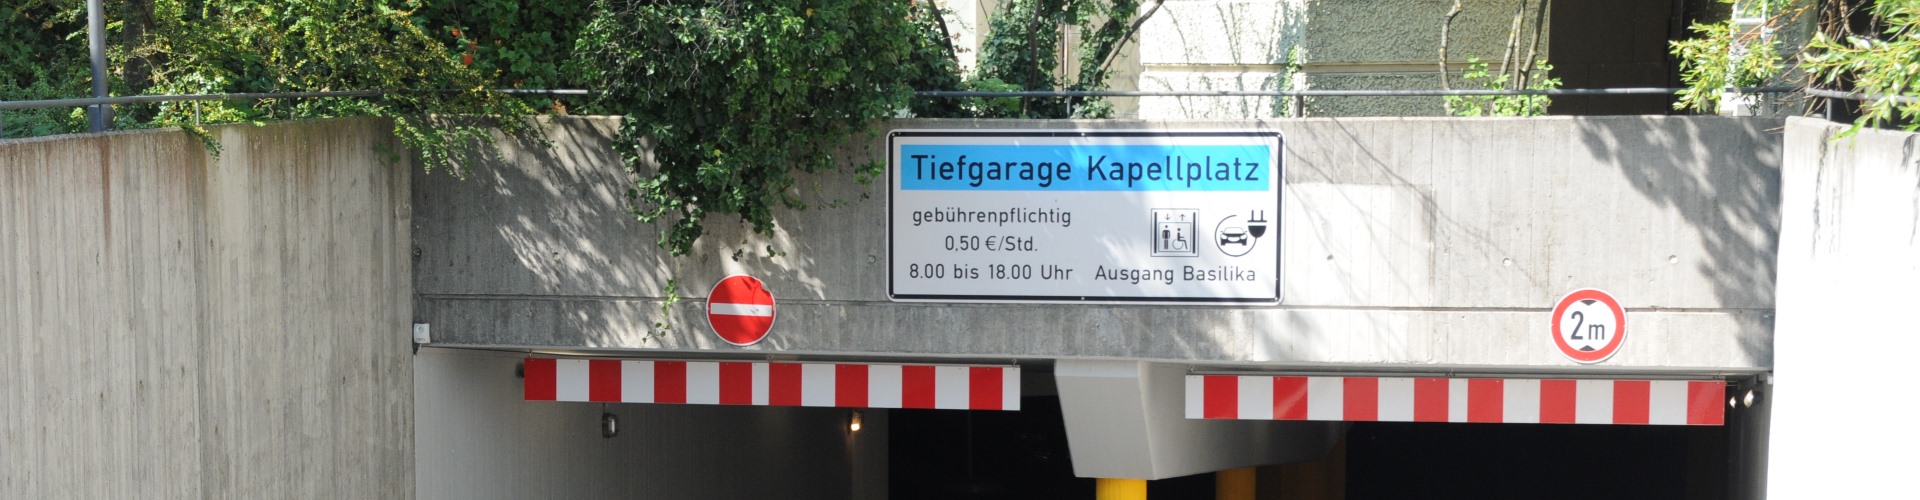 Abfahrt zur Tiefgarage am Kapellplatz Altötting mit Infoschild.